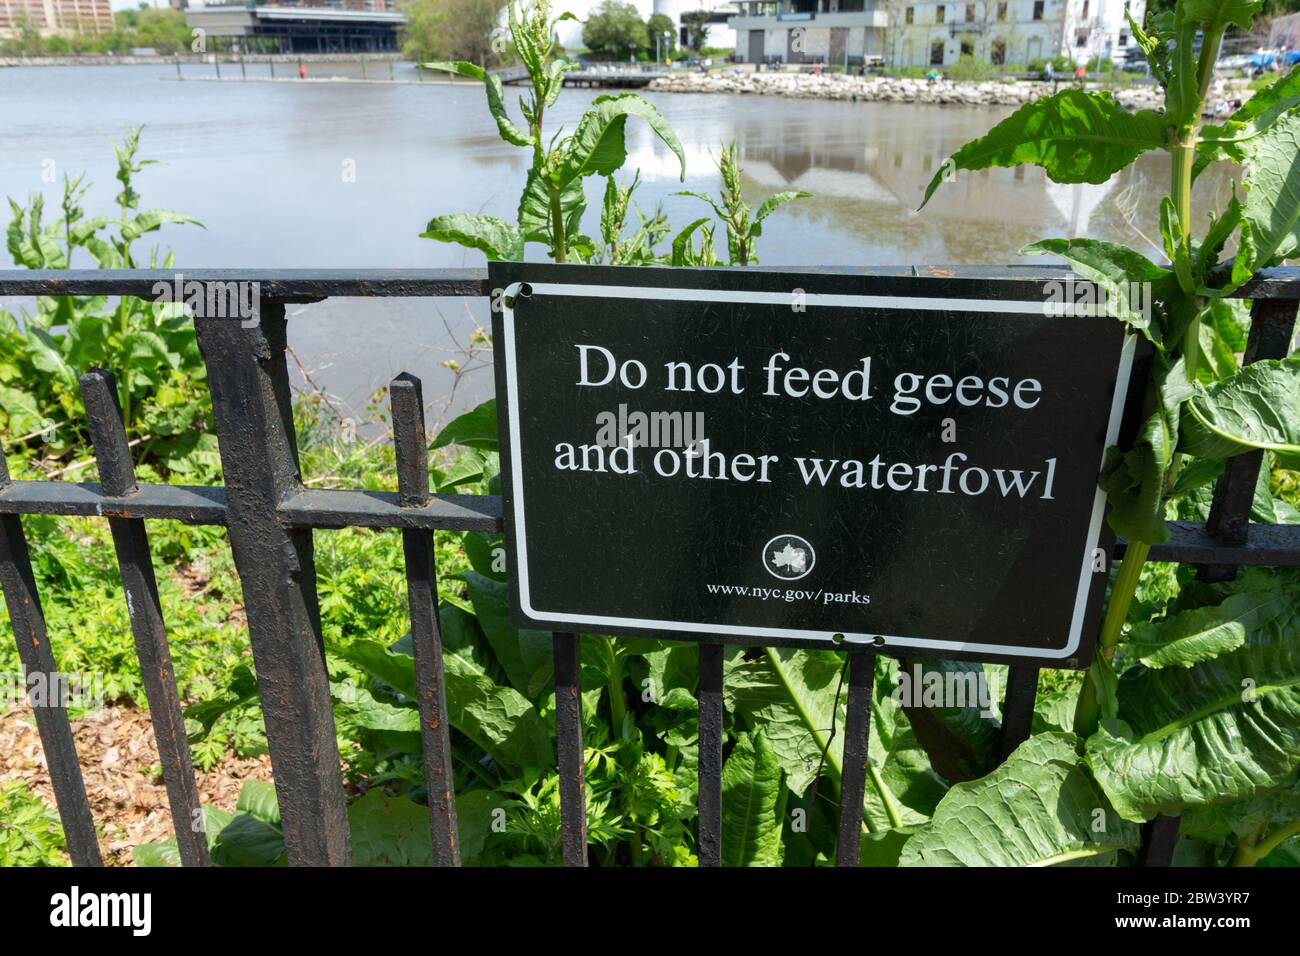 Un panneau dans le parc Inwood Hill demande au public de ne pas nourrir les oies et autres oiseaux aquatiques. Les oies sont considérées comme une nuisance dans les parcs de New York Banque D'Images